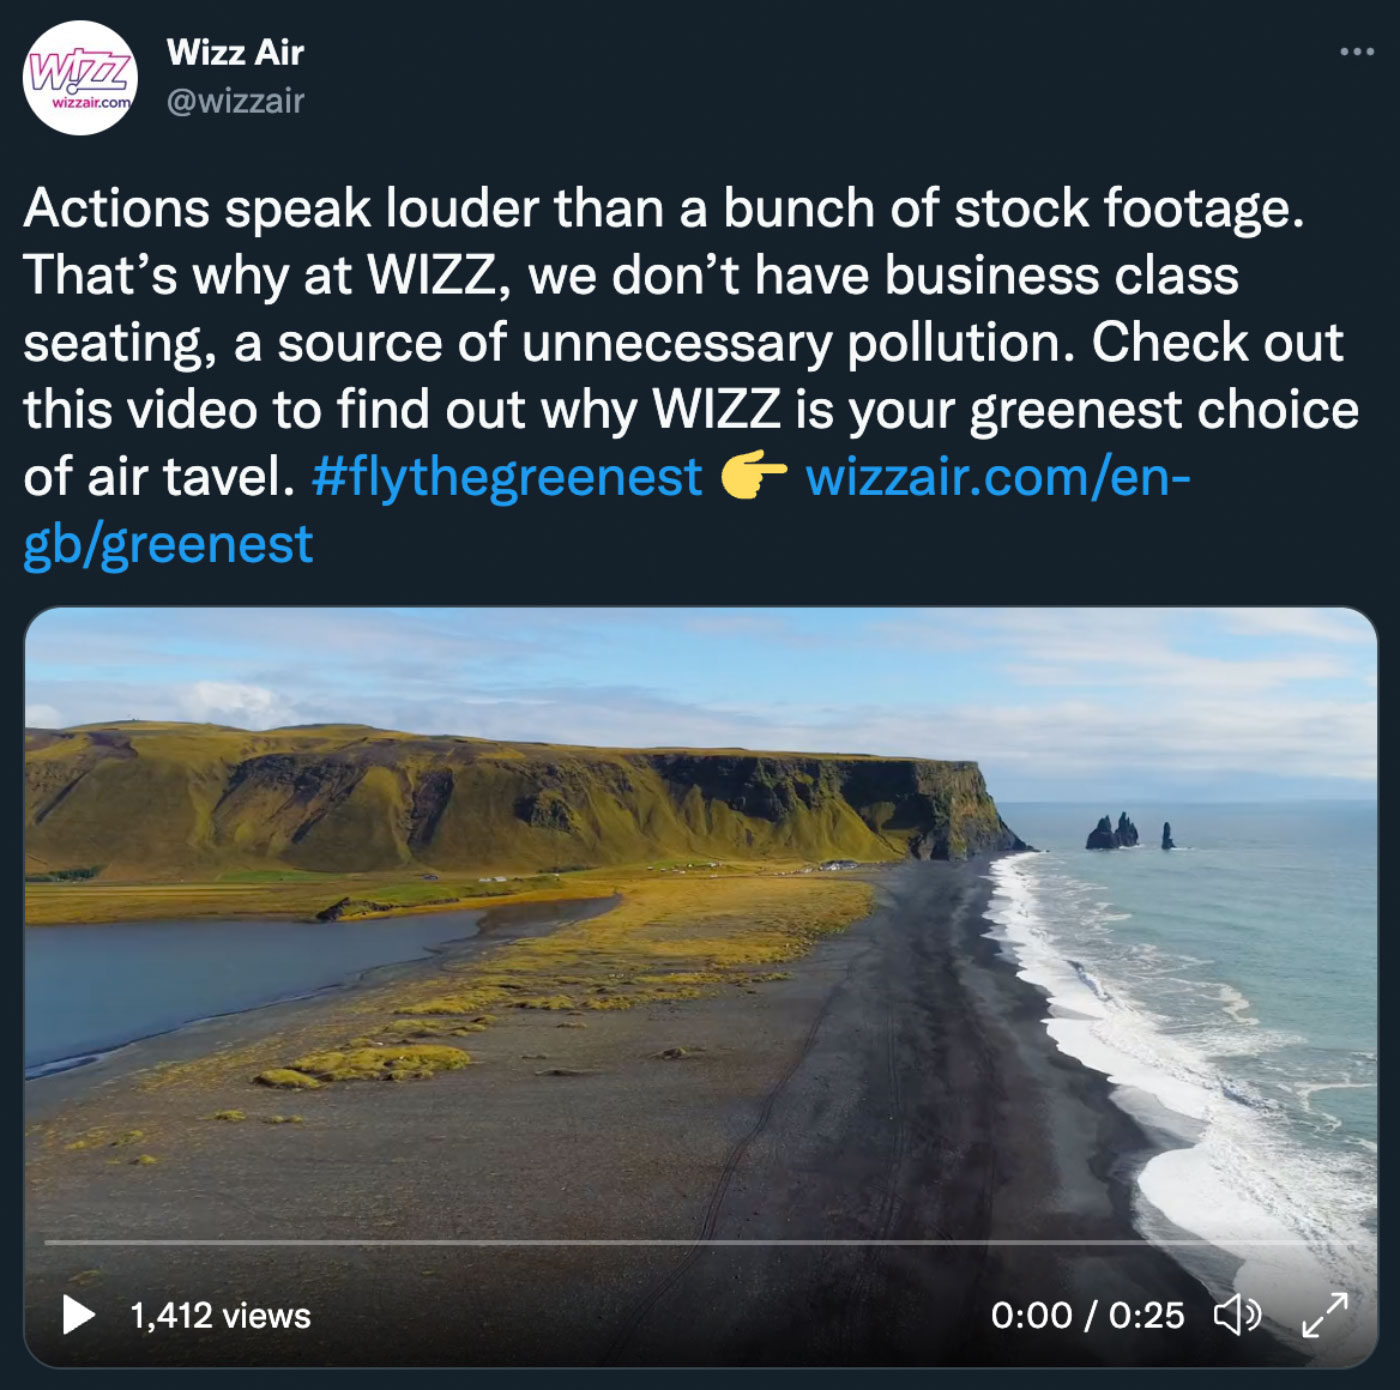 Twitter-Beitrag von Wizz Air mit einem Video von einem dunklen Strand mit grasbewachsenen Klippen in der Ferne und dem Meer rechts